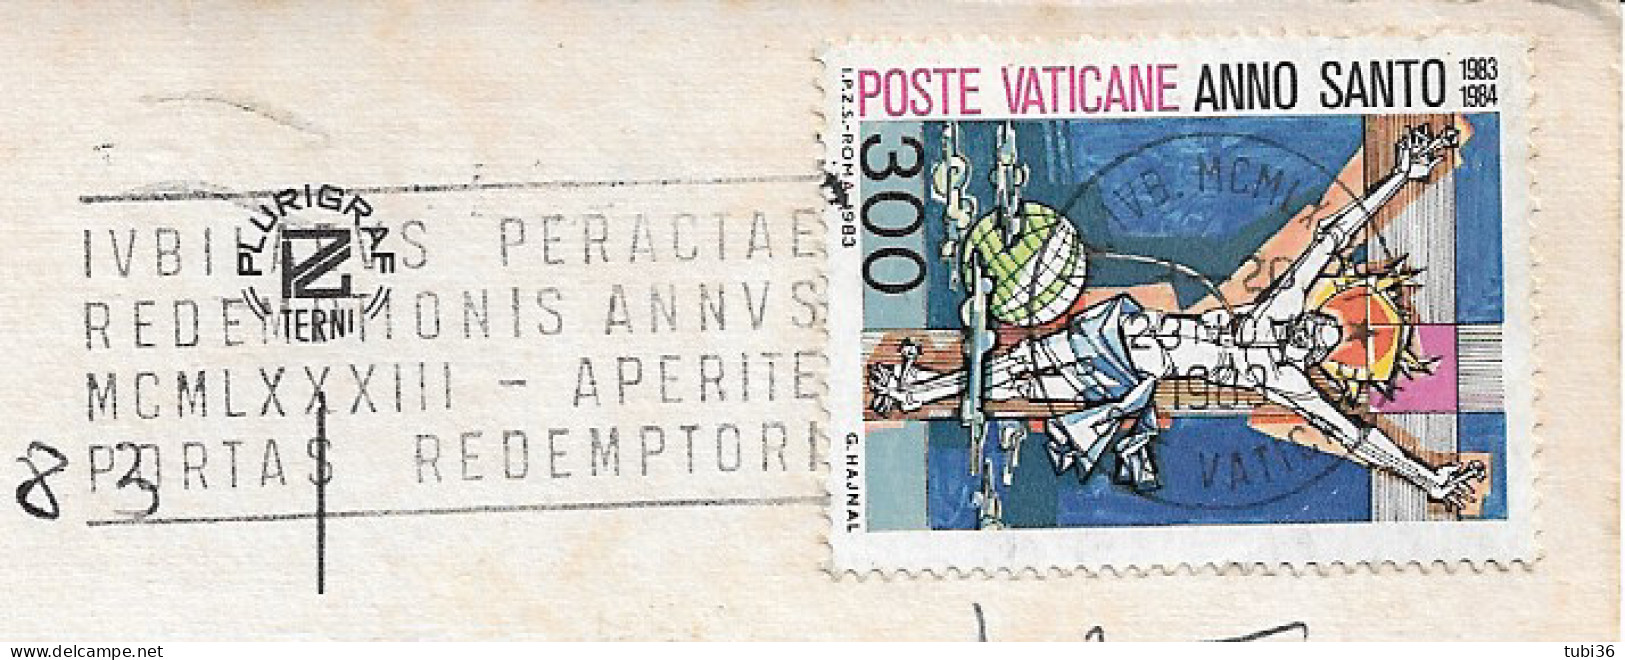 VATICANO - ANNO SANTO 1983 £.300 - ISOLATO SU CARTOLINA  ILL.-1983- TIMBRO POSTE VATICANE -ROMA PIAZZA S. PIETRO Colori - Covers & Documents